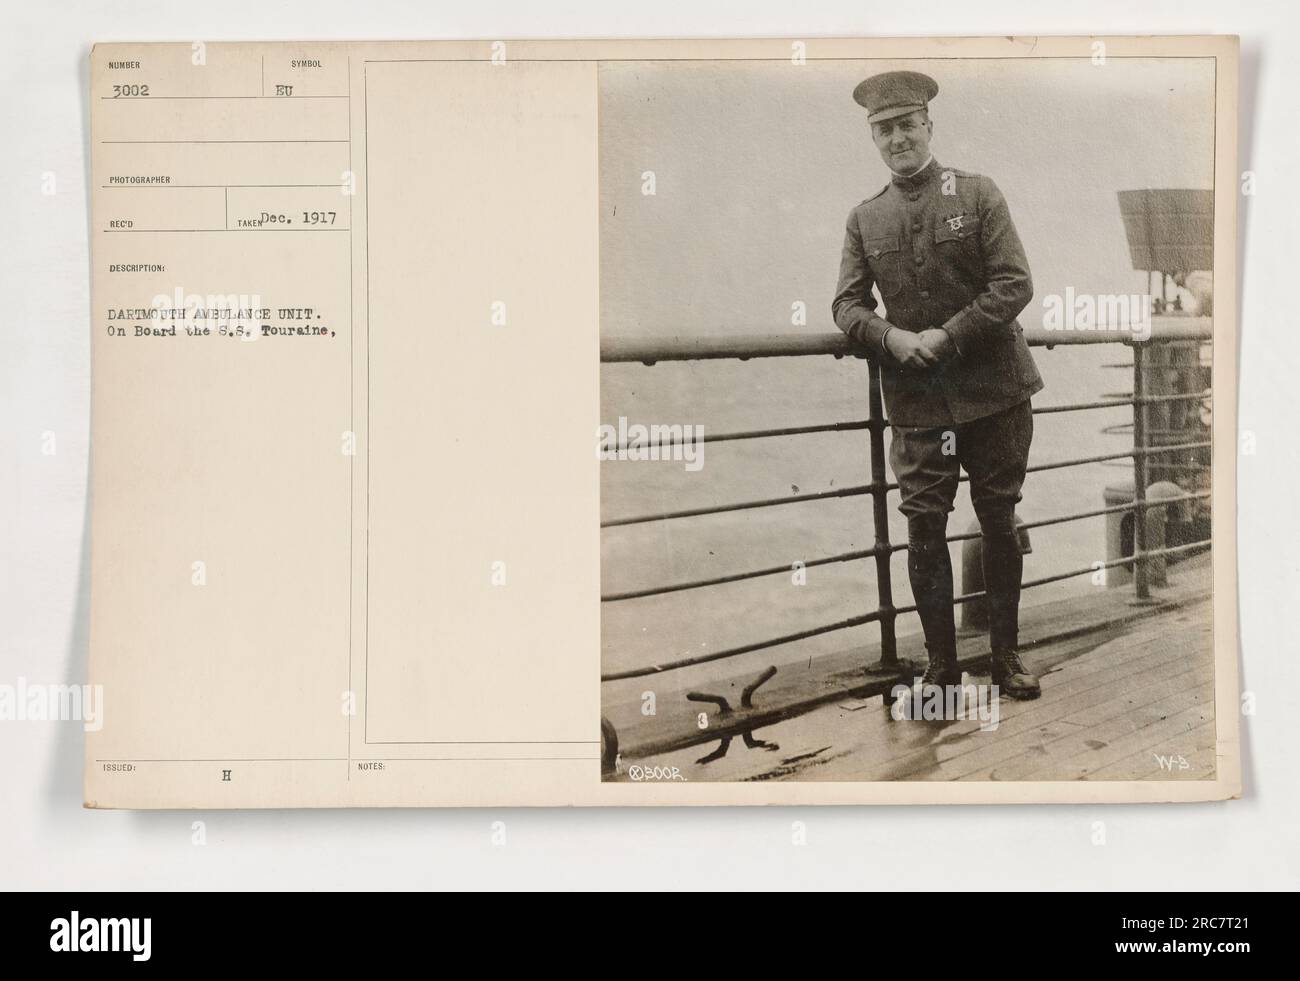 Personale dell'unità di ambulanza Dartmouth a bordo della S.S.. Touraine durante la prima guerra mondiale. La foto cattura i membri dell'unità numero 3002. La fotografia è stata ricevuta attraverso il 188° sindacato dell'ingegnere degli Stati Uniti. Presa nel dicembre 1917. Foto Stock